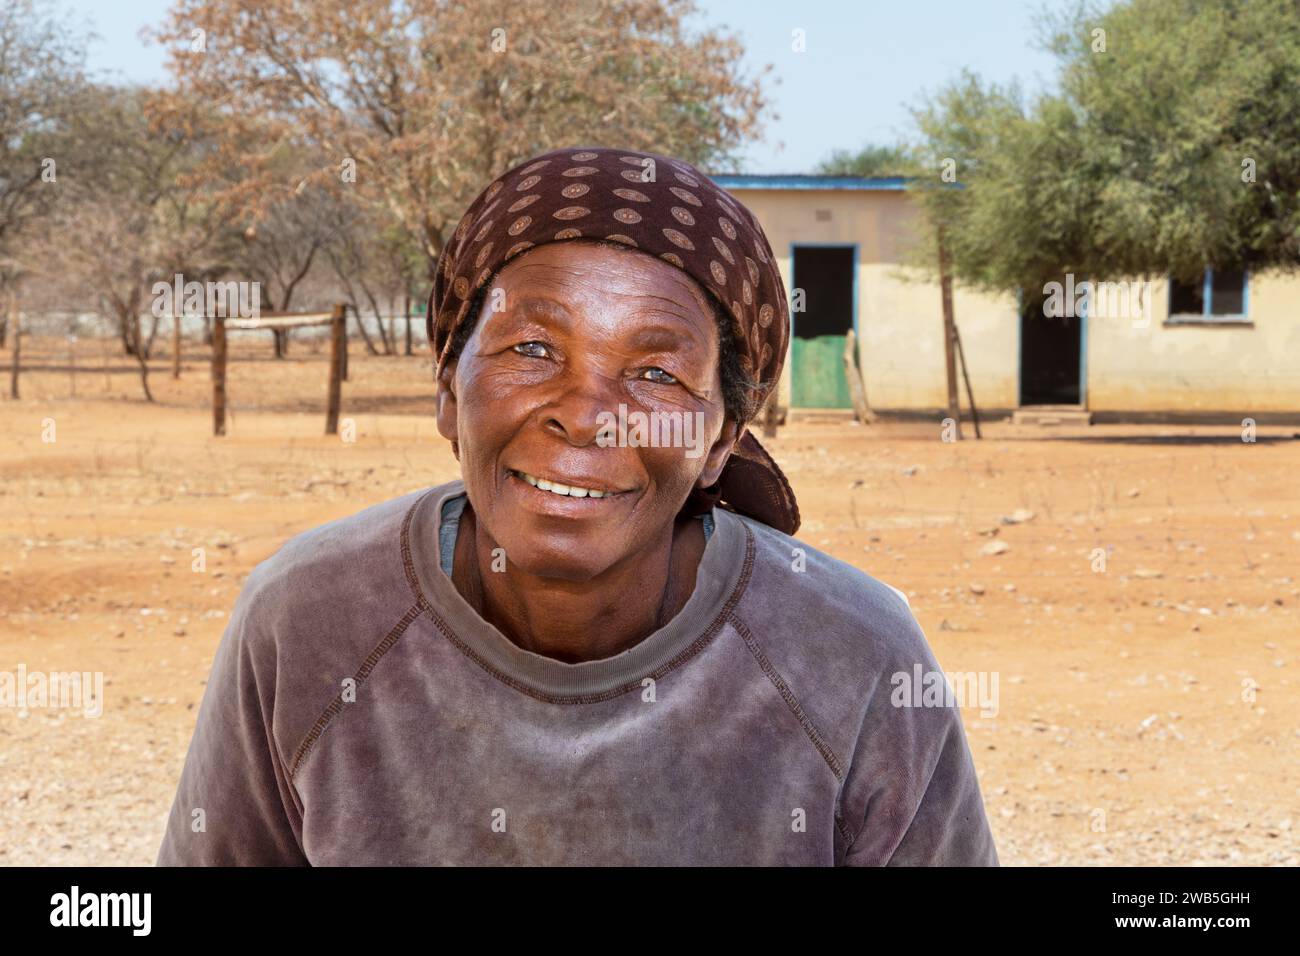 portrait de vieille femme africaine dans le village, maison en arrière-plan Banque D'Images